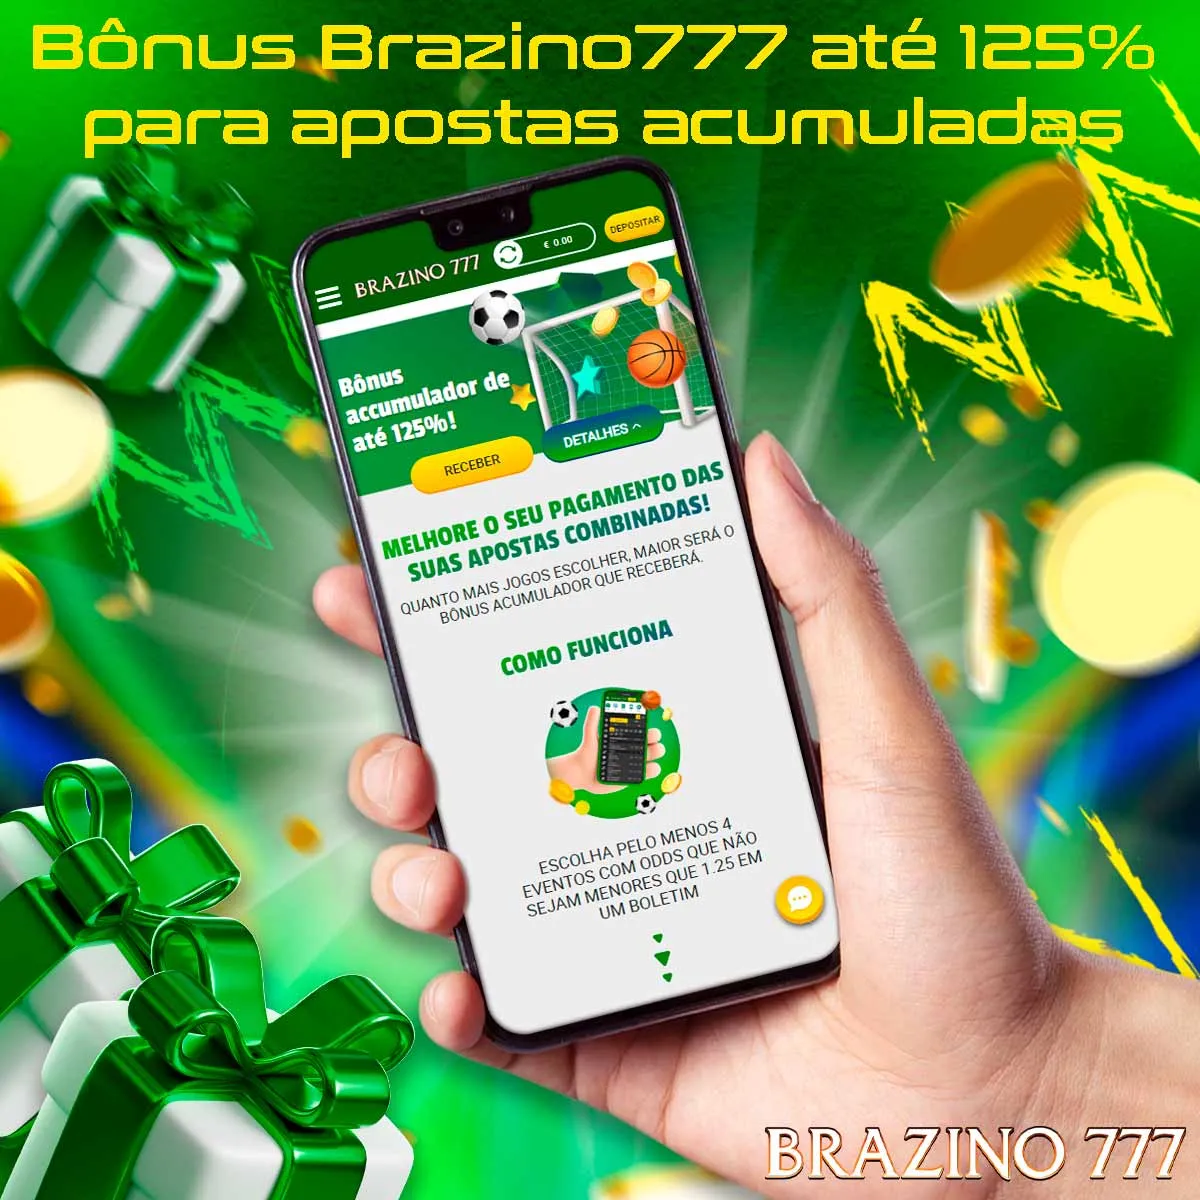 Bônus Brazino777 até 125% para apostas acumuladas